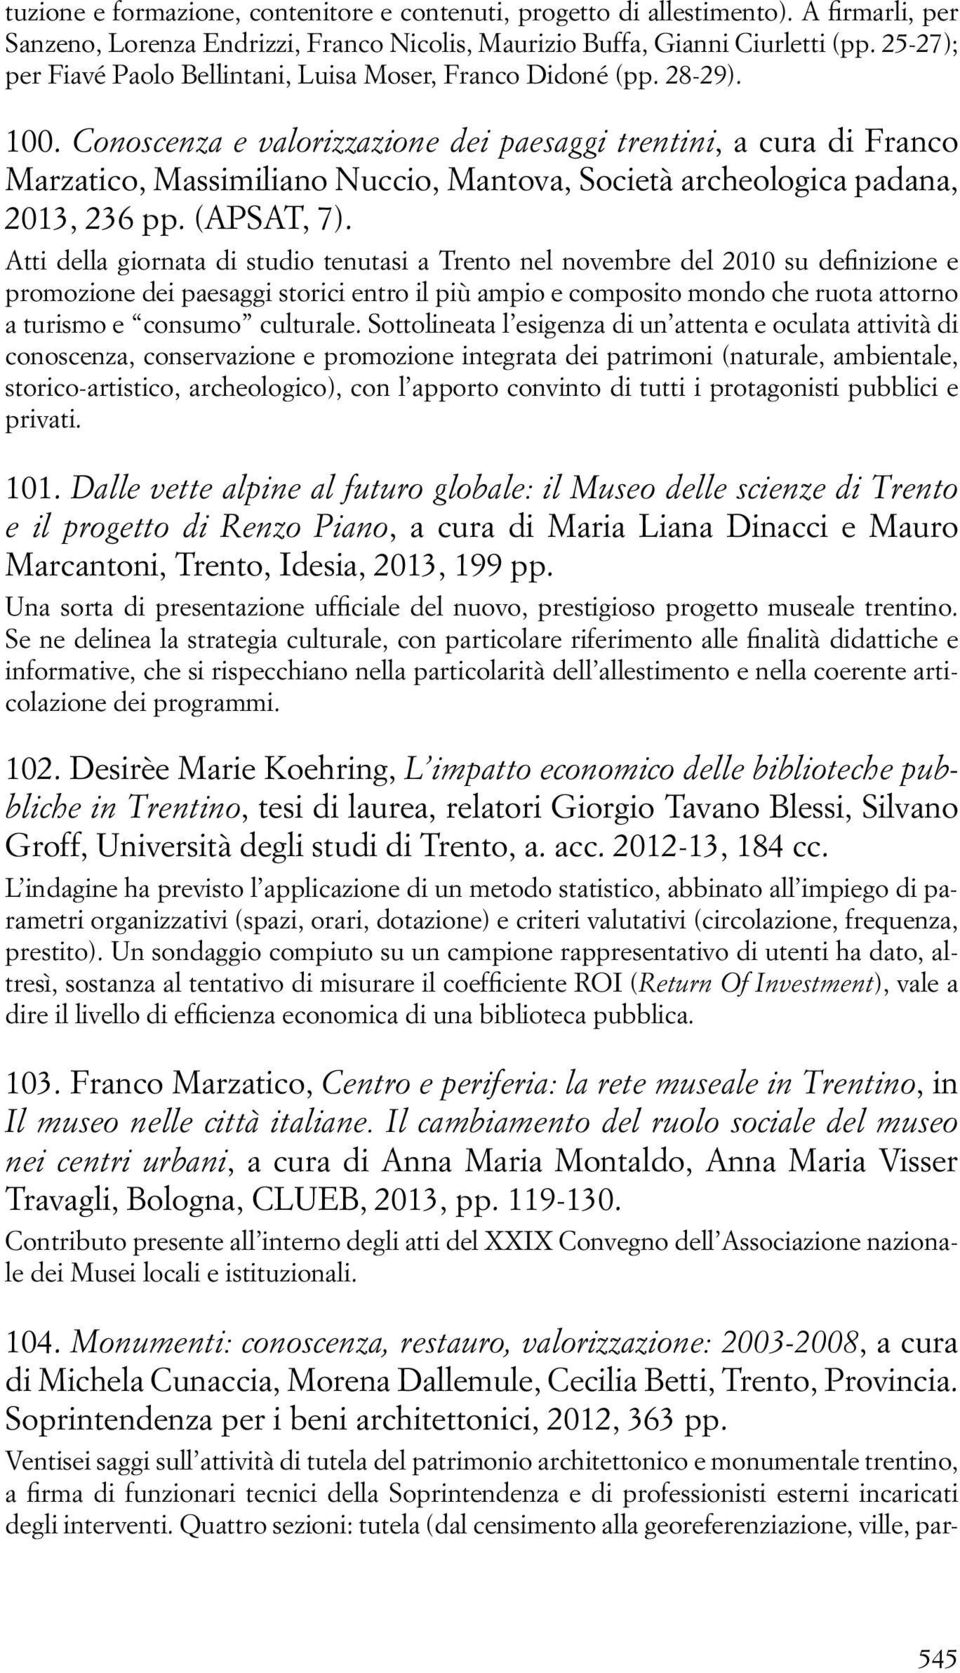 Conoscenza e valorizzazione dei paesaggi trentini, a cura di Franco Marzatico, Massimiliano Nuccio, Mantova, Società archeologica padana, 2013, 236 pp. (APSAT, 7).